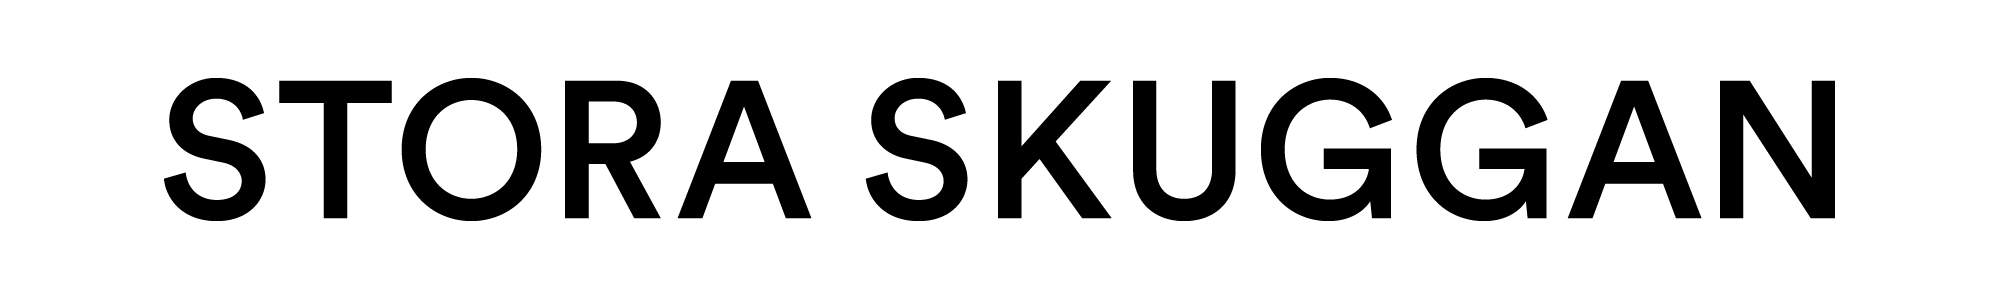 STSK_logotype